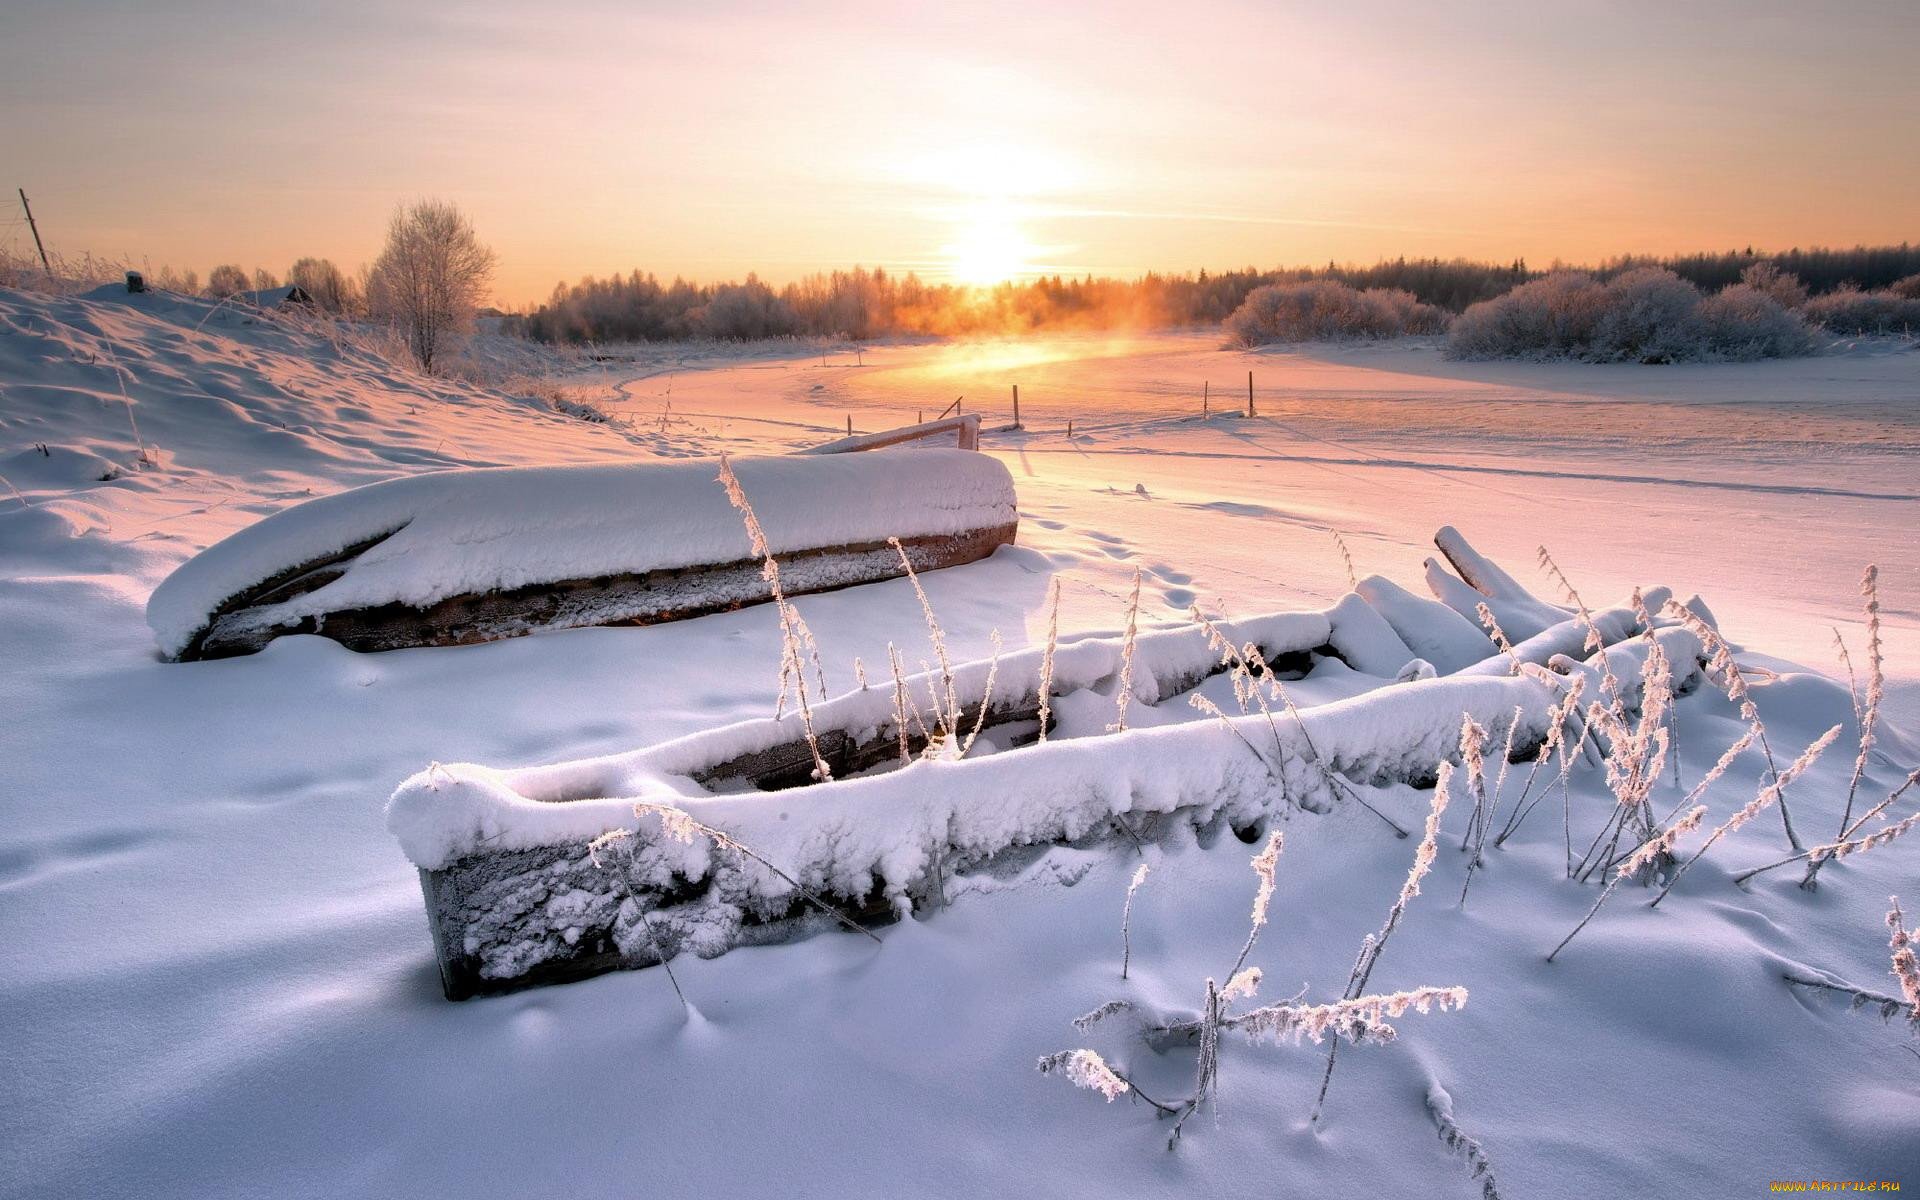 Судьба под снегом. Зимняя природа. Лодка в снегу. Природа Карелии зимой. Зимний пейзаж лед.